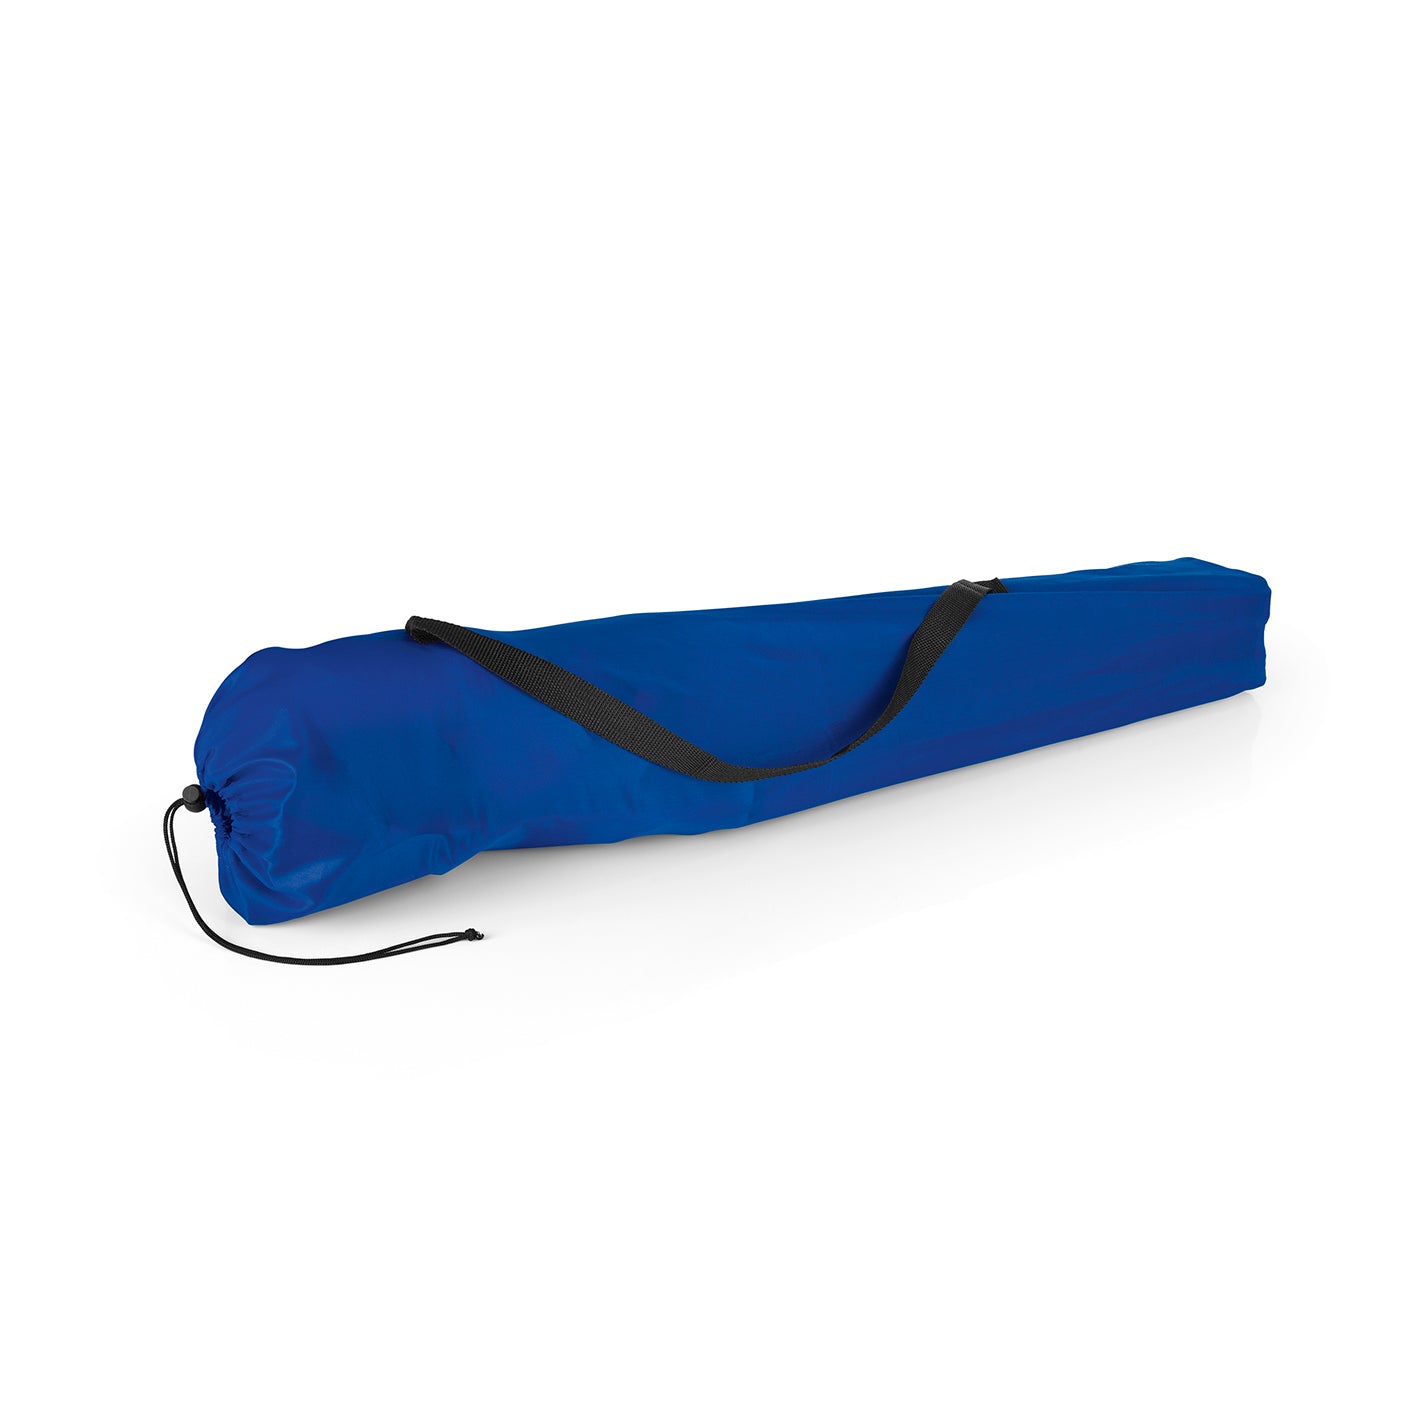 Campingstuhl faltbar mit Logo - 80x50 cm - weiß/blau